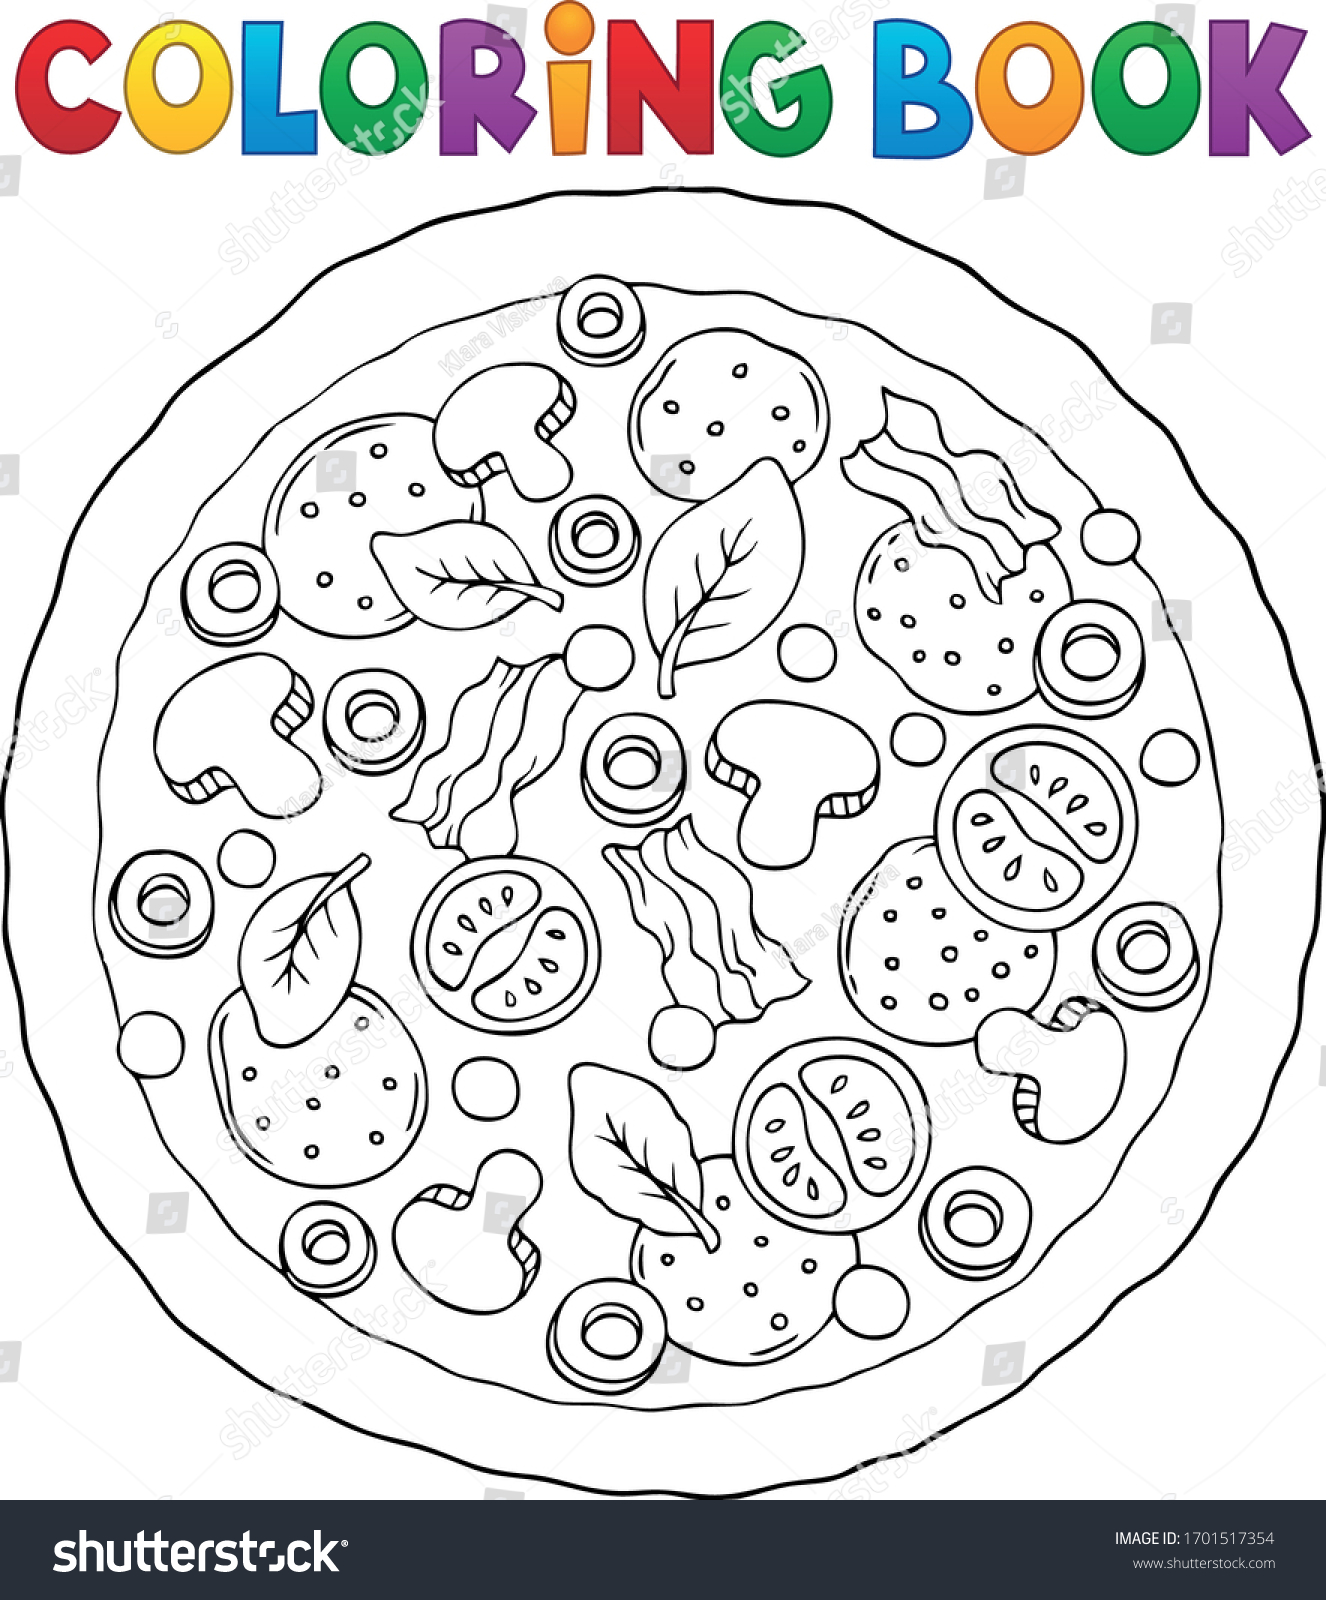 Imãgenes fotos de stock objetos en d y vectores sobre coloring book pizza